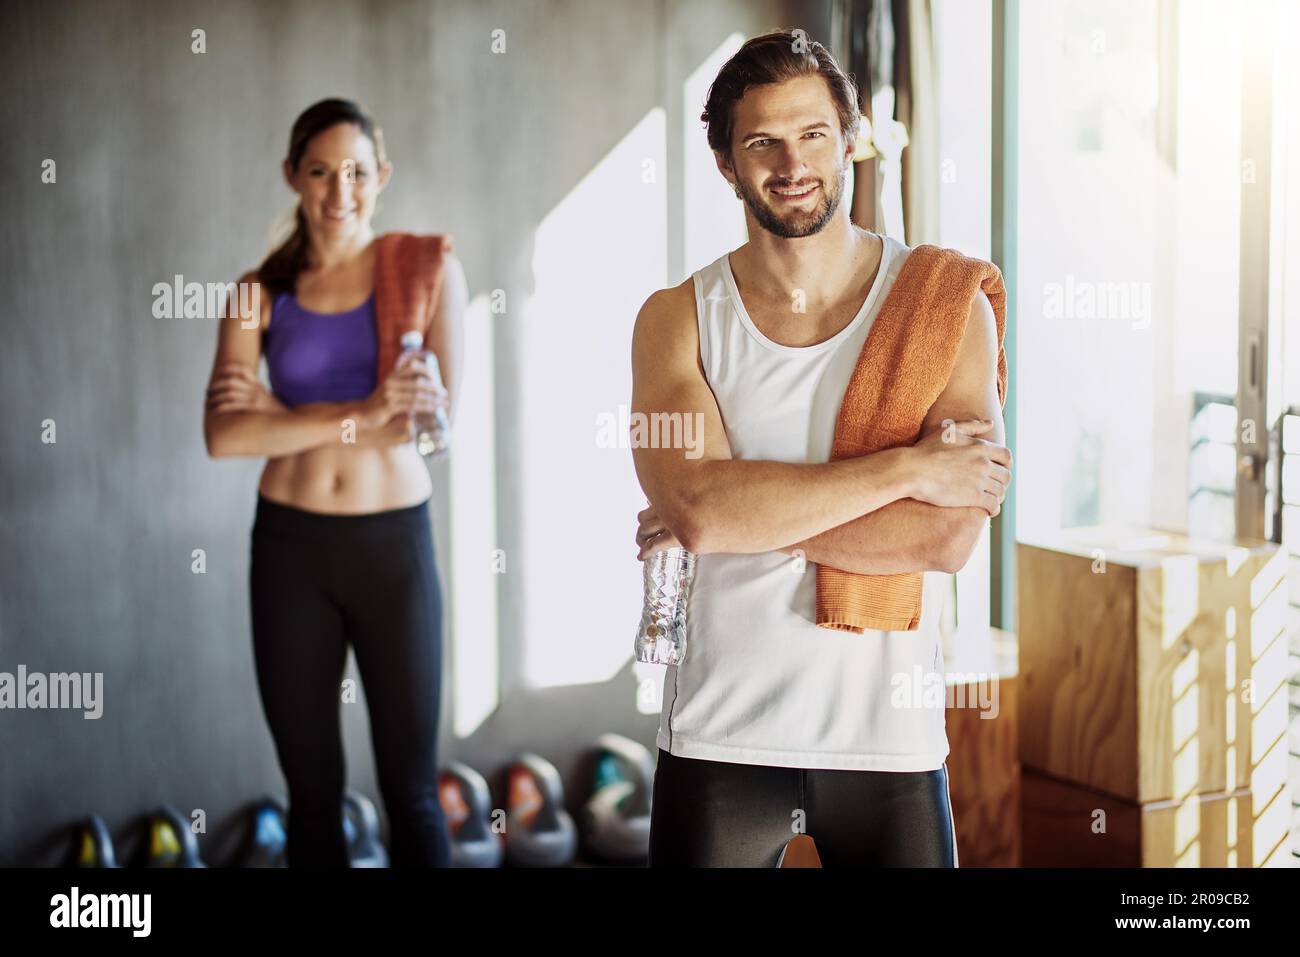 Zusammen fitter zu werden. Zwei junge Leute stehen mit zusammengeklappten Armen im Fitnessstudio. Stockfoto